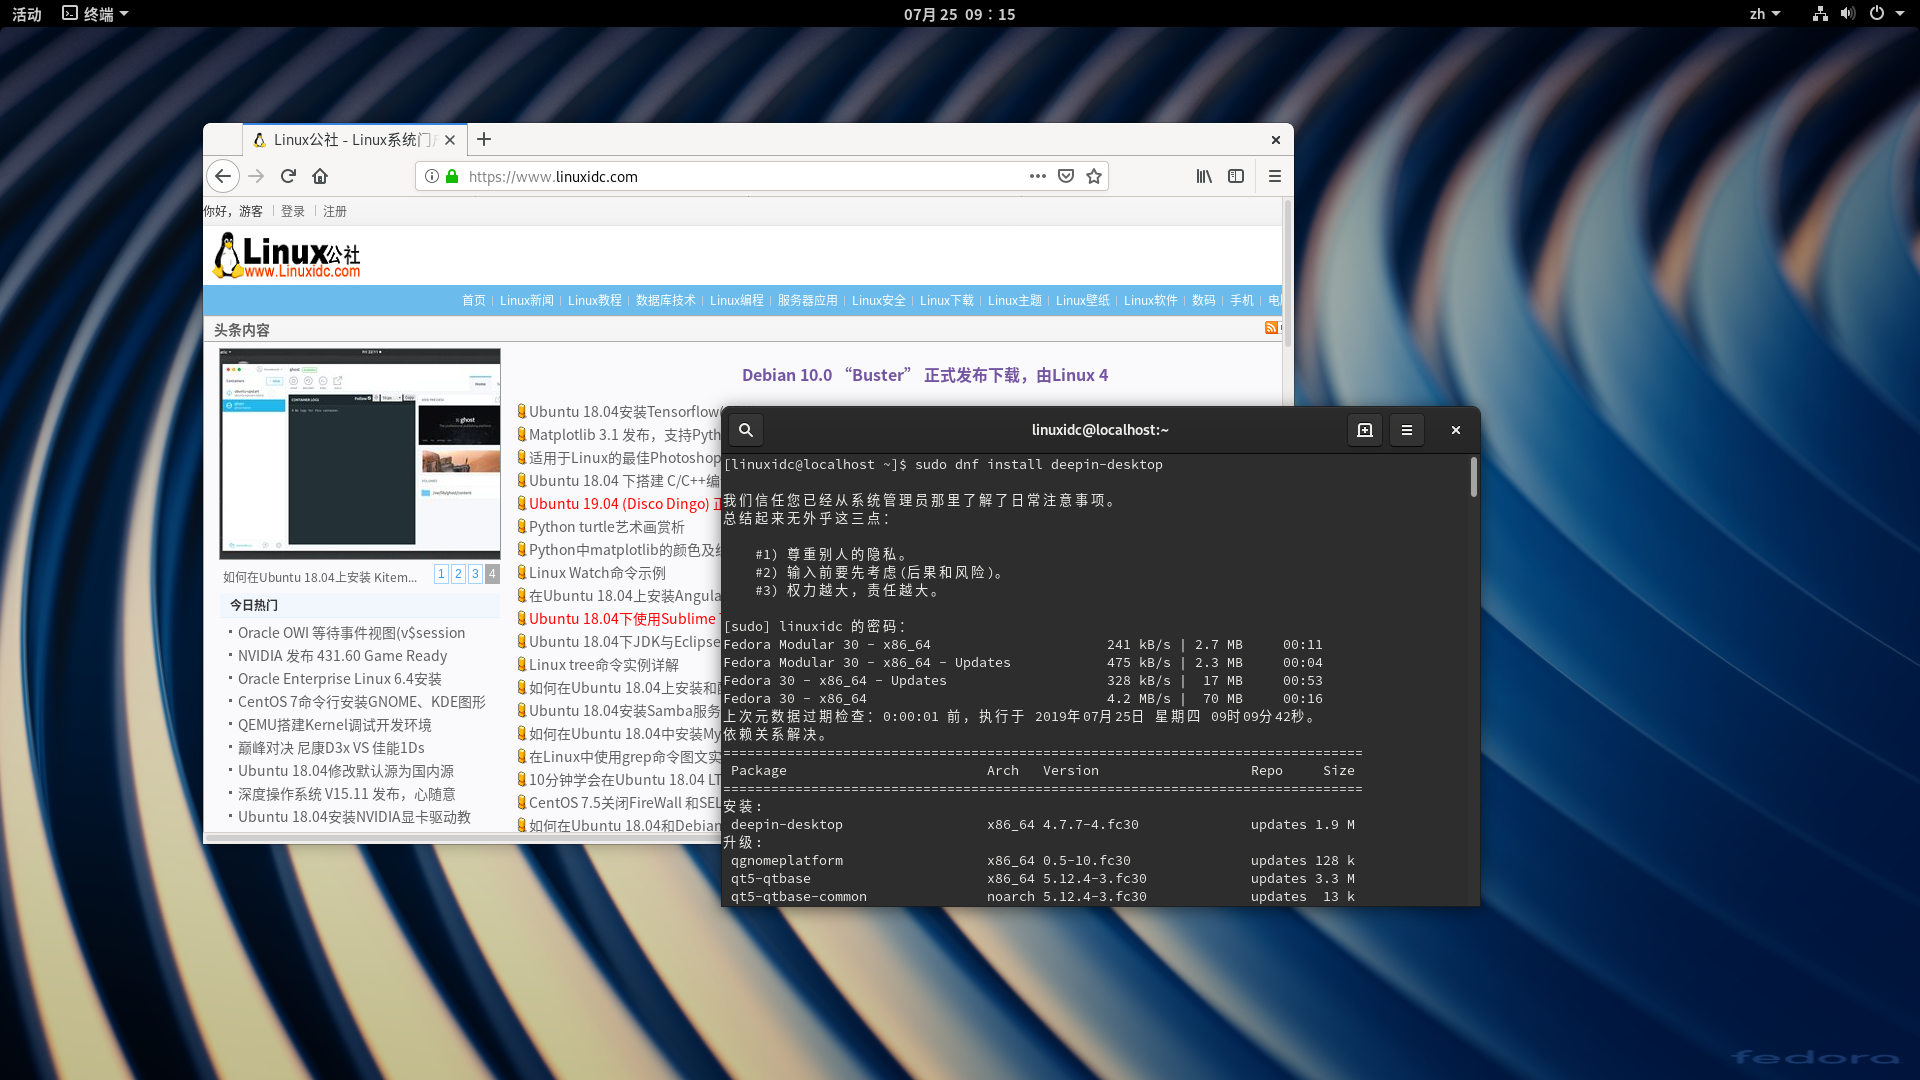 为Fedora 30系统安装Deepin桌面环境（DDE）-栗子博客